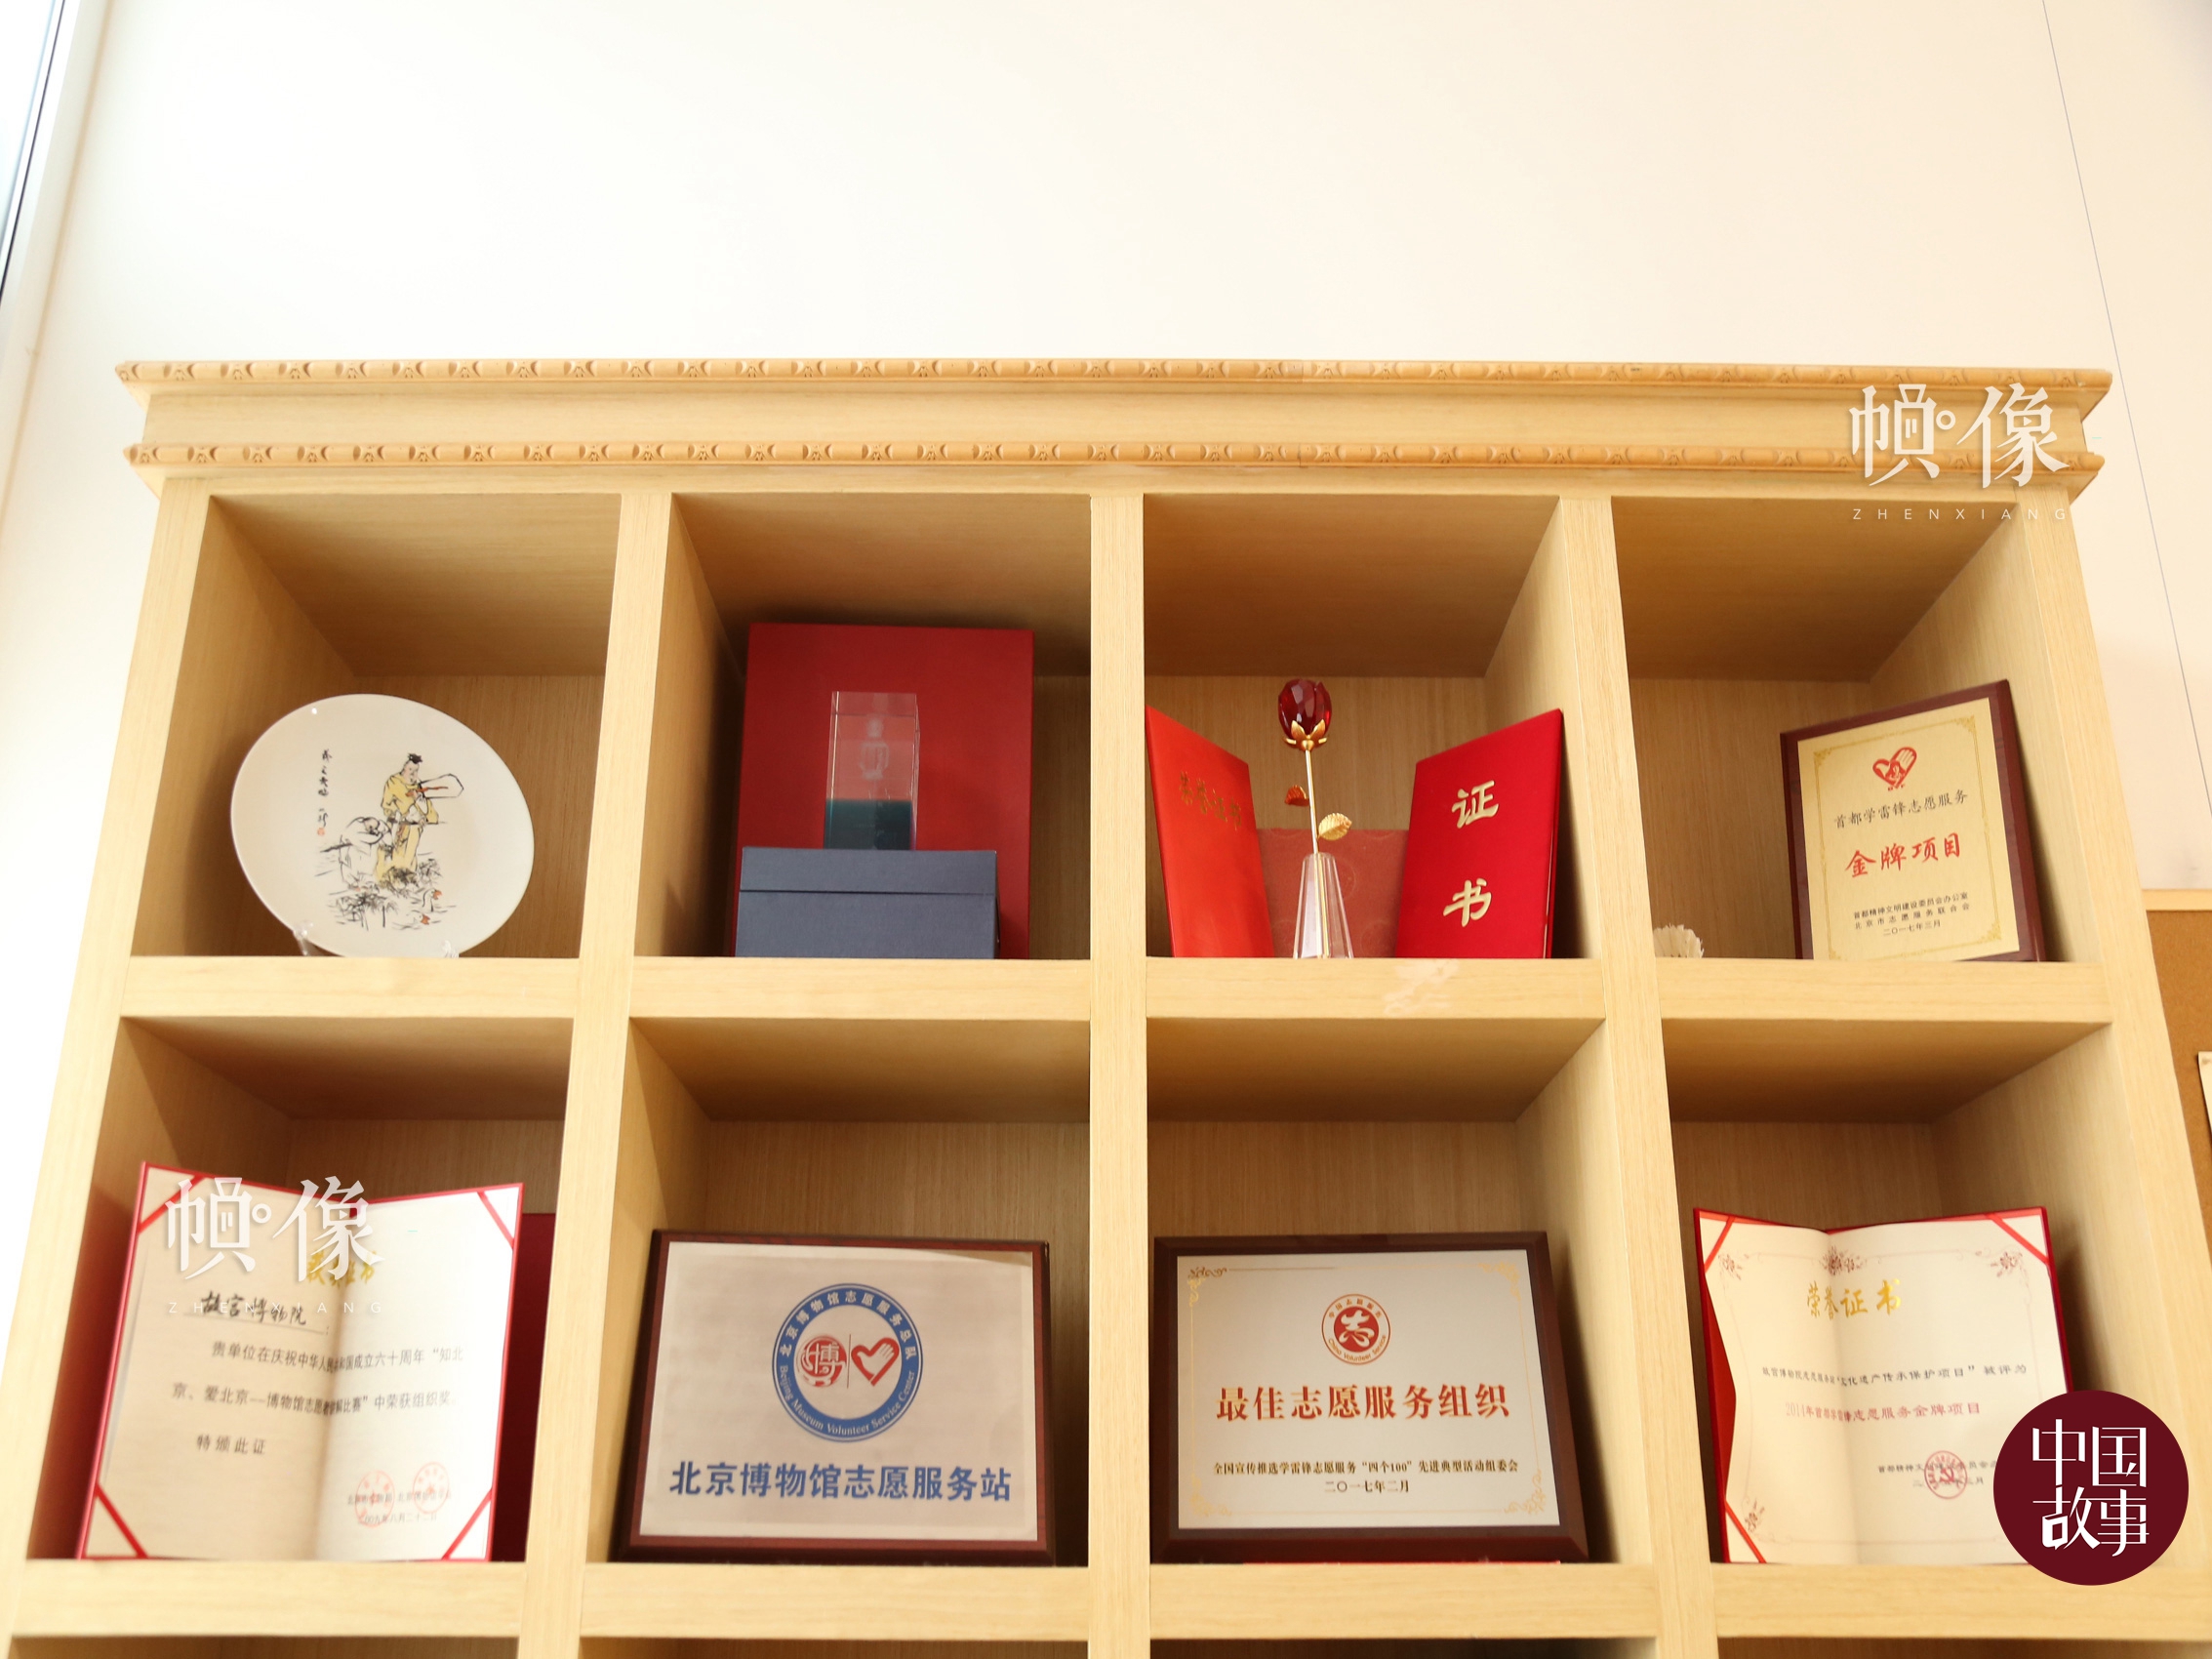 故宮志願者曾獲得的榮譽展櫃。中國網記者 趙超 攝